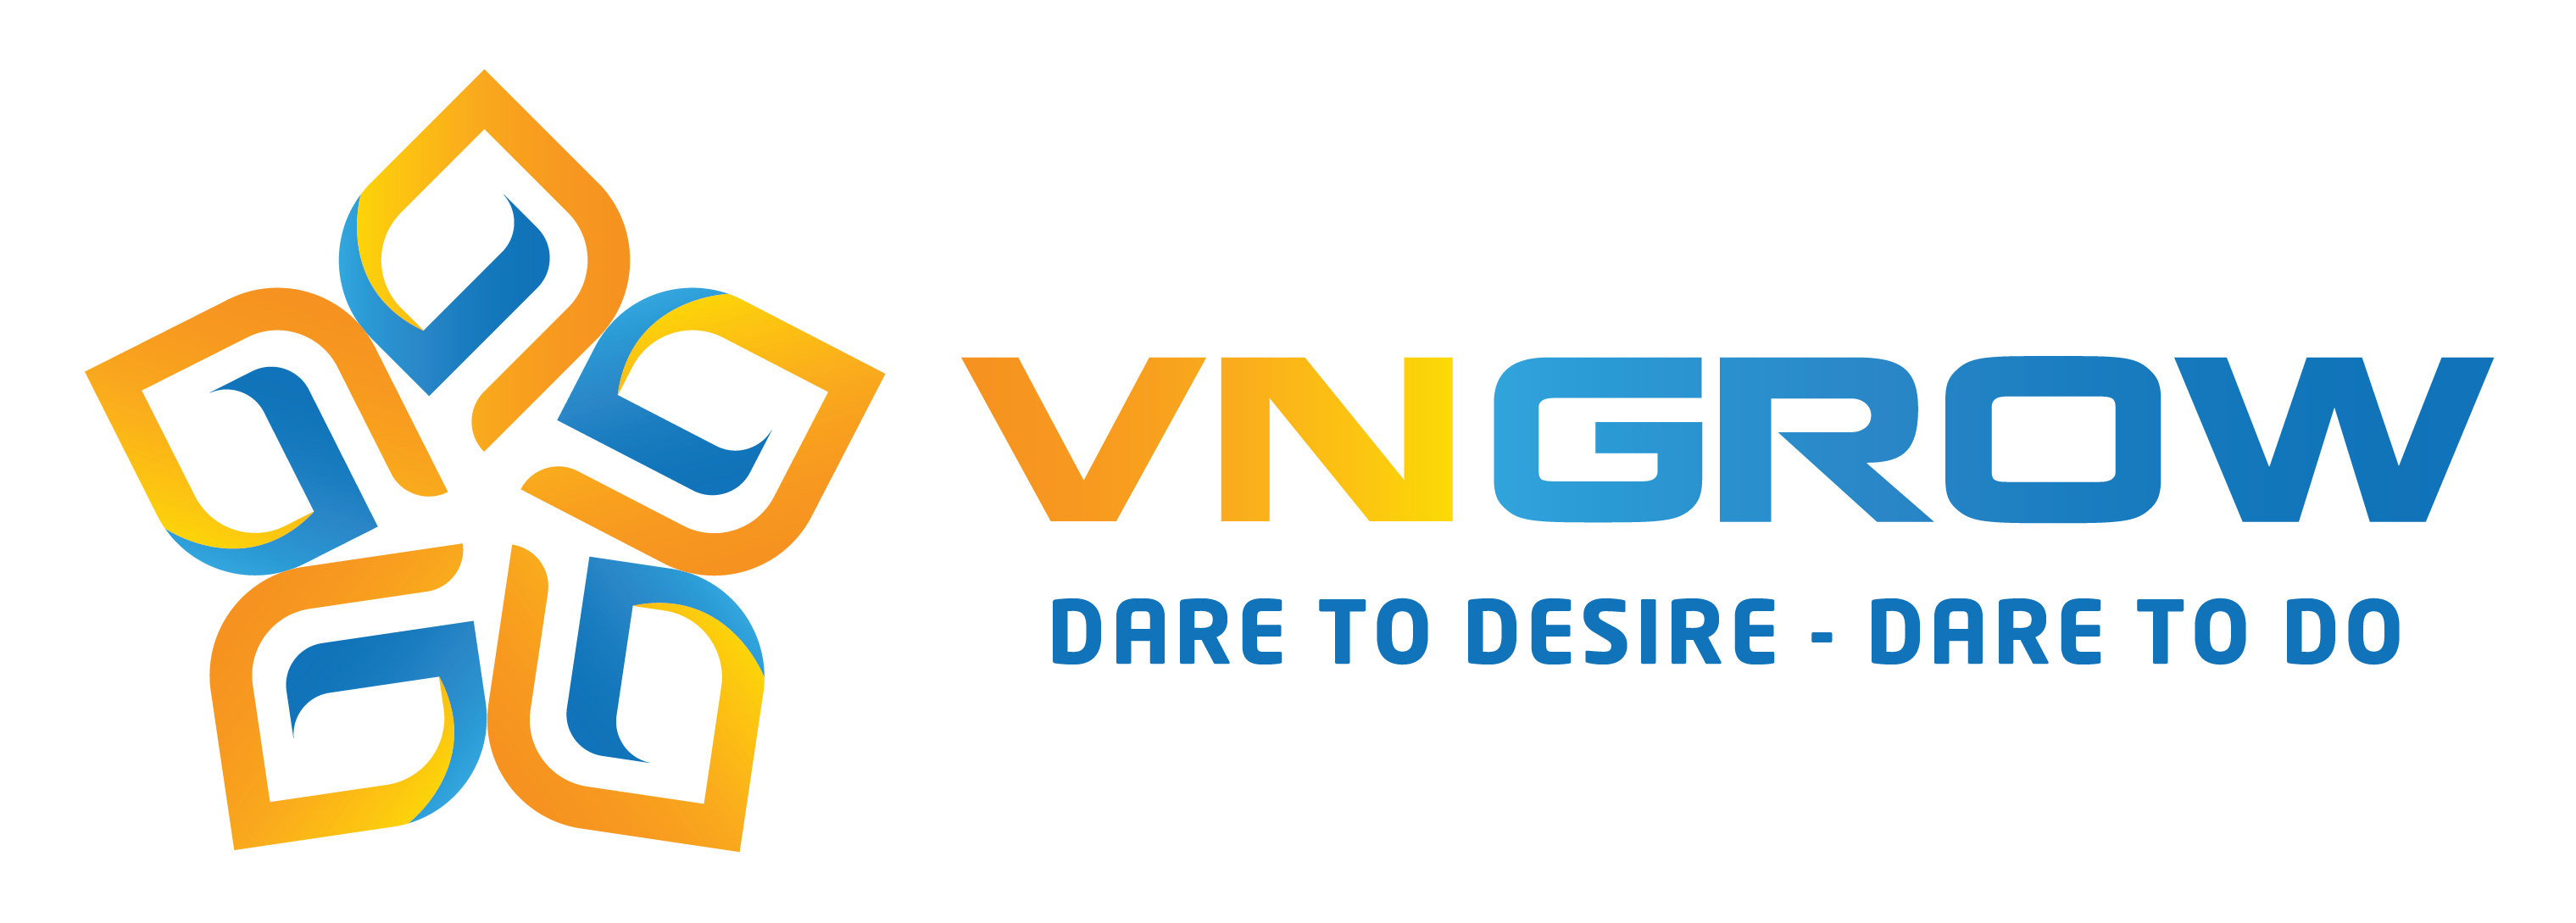 Vngrow Co., Ltd – Dare to desire – Dare to do